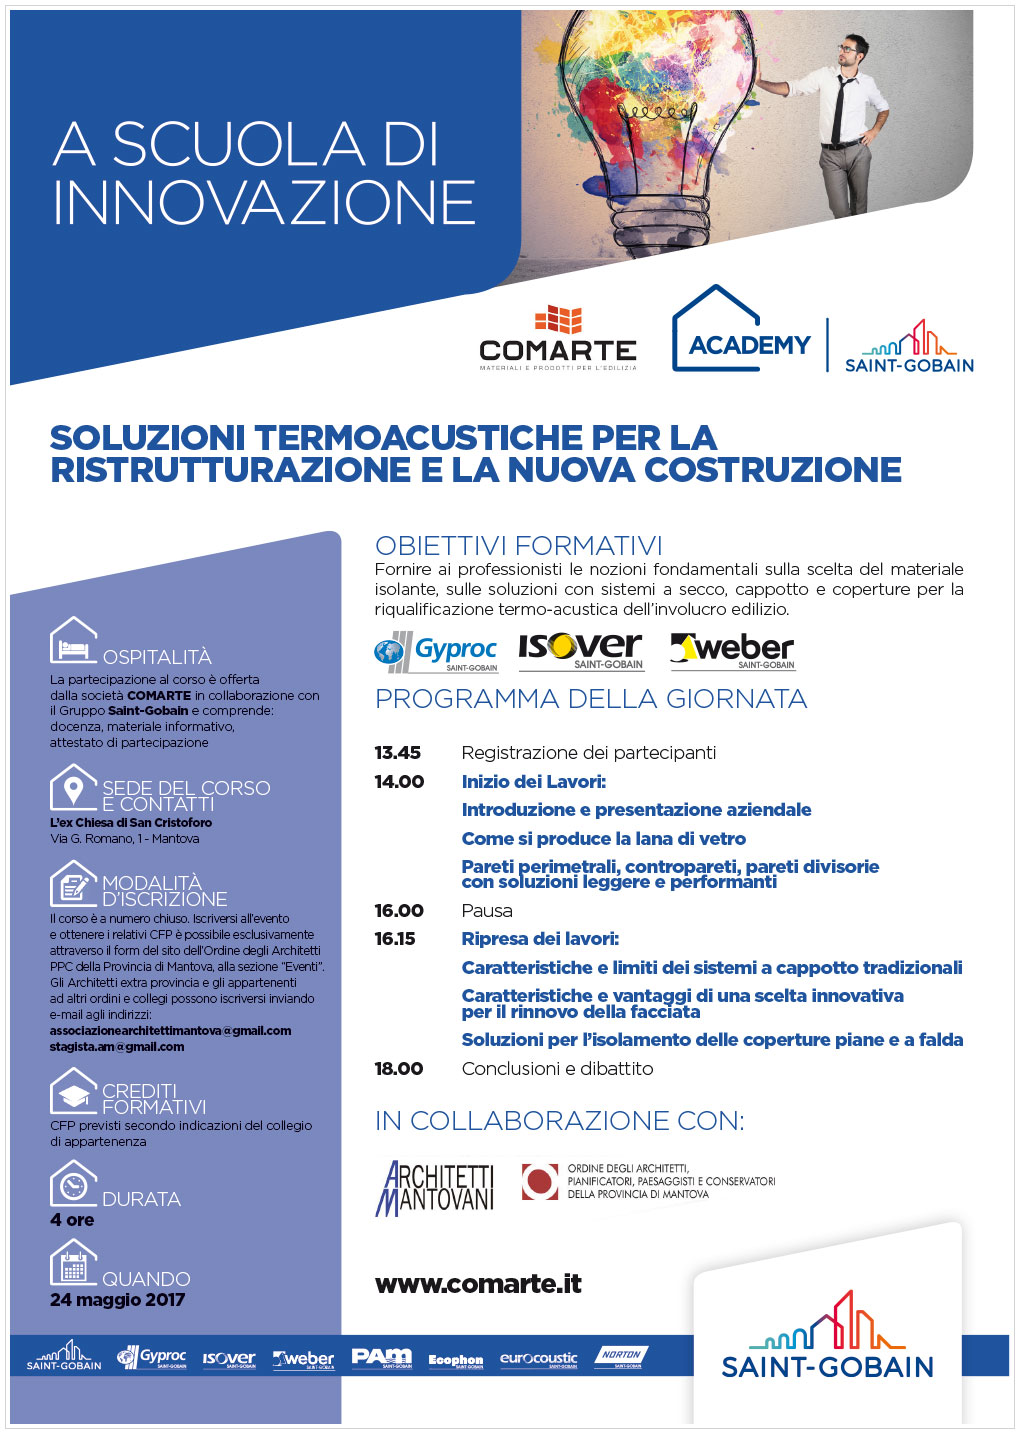 A scuola di innovazione | Mantova, 24 maggio 2017